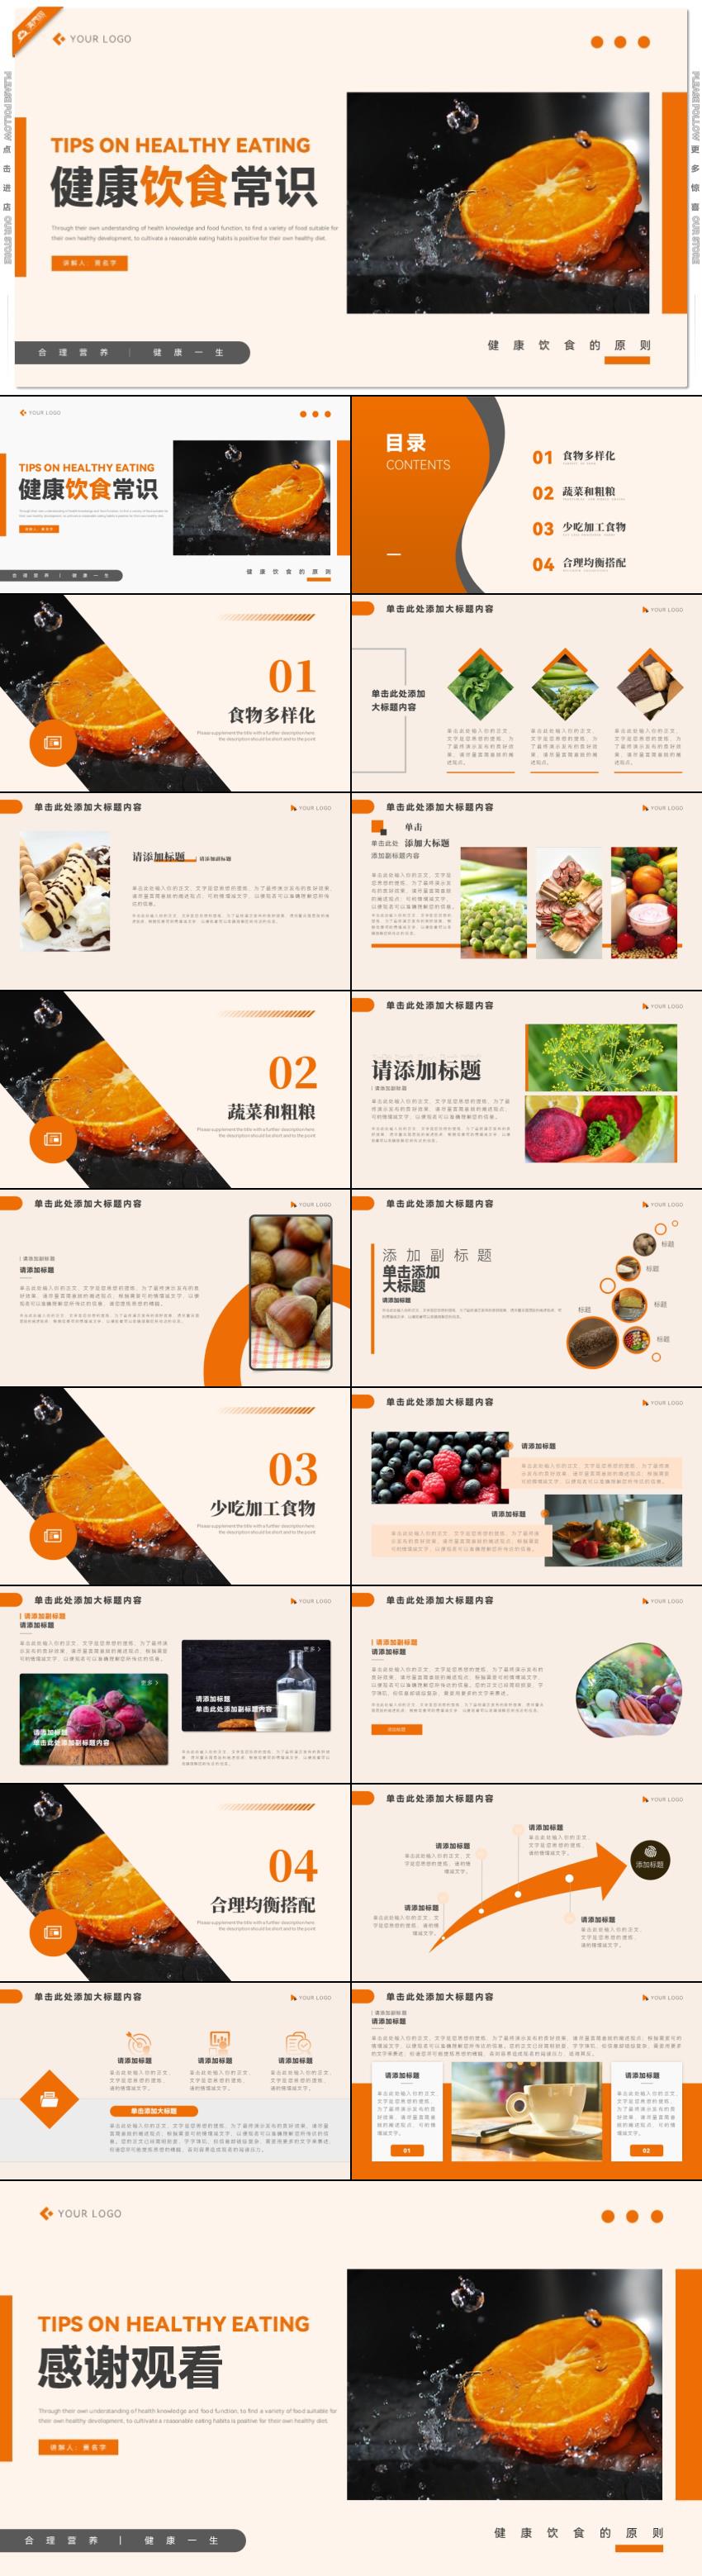 橙色均衡营养健康饮食常识PPT模板